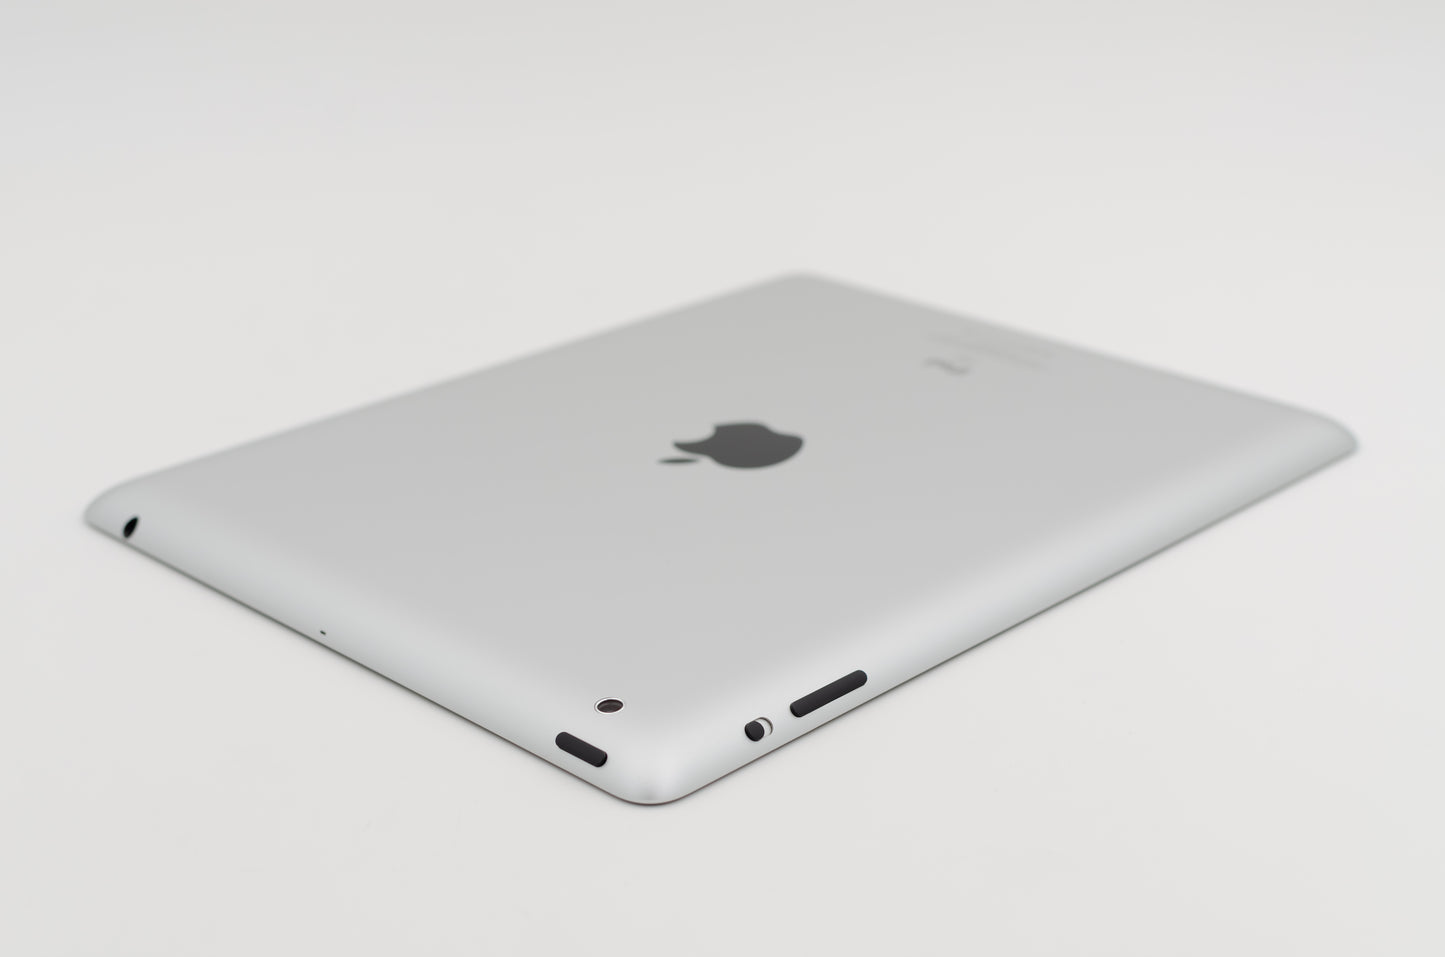 apple-2012-9.7-inch-ipad-2-a1397-silver/black-5